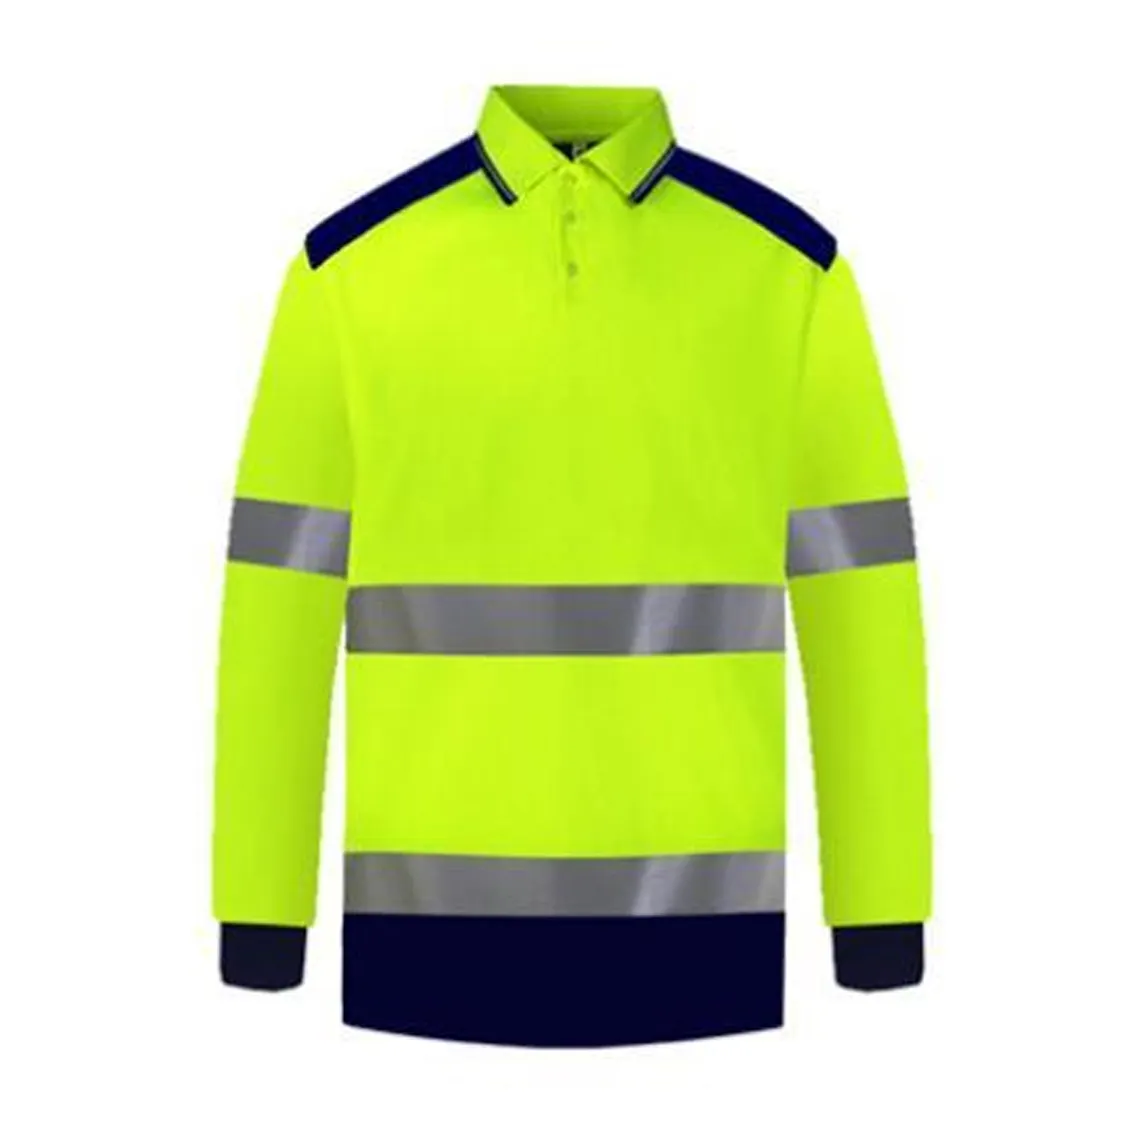 Polo di sicurezza a maniche corte bicolore camicia riflettente ad alta visibilità con tasche camicia da lavoro ad alta visibilità